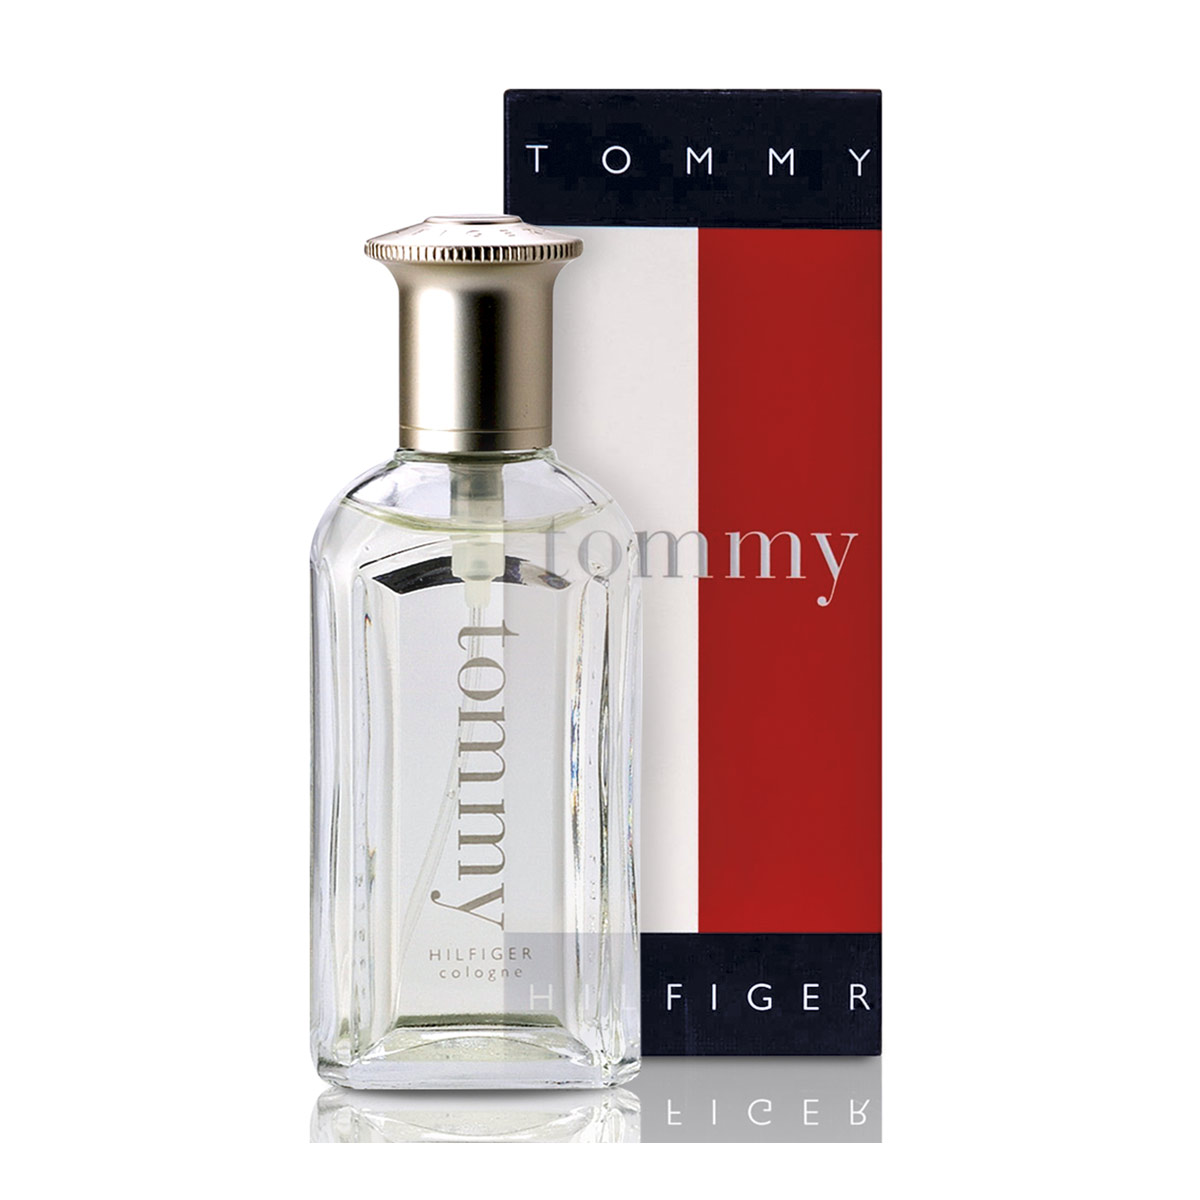 tommy boy perfume